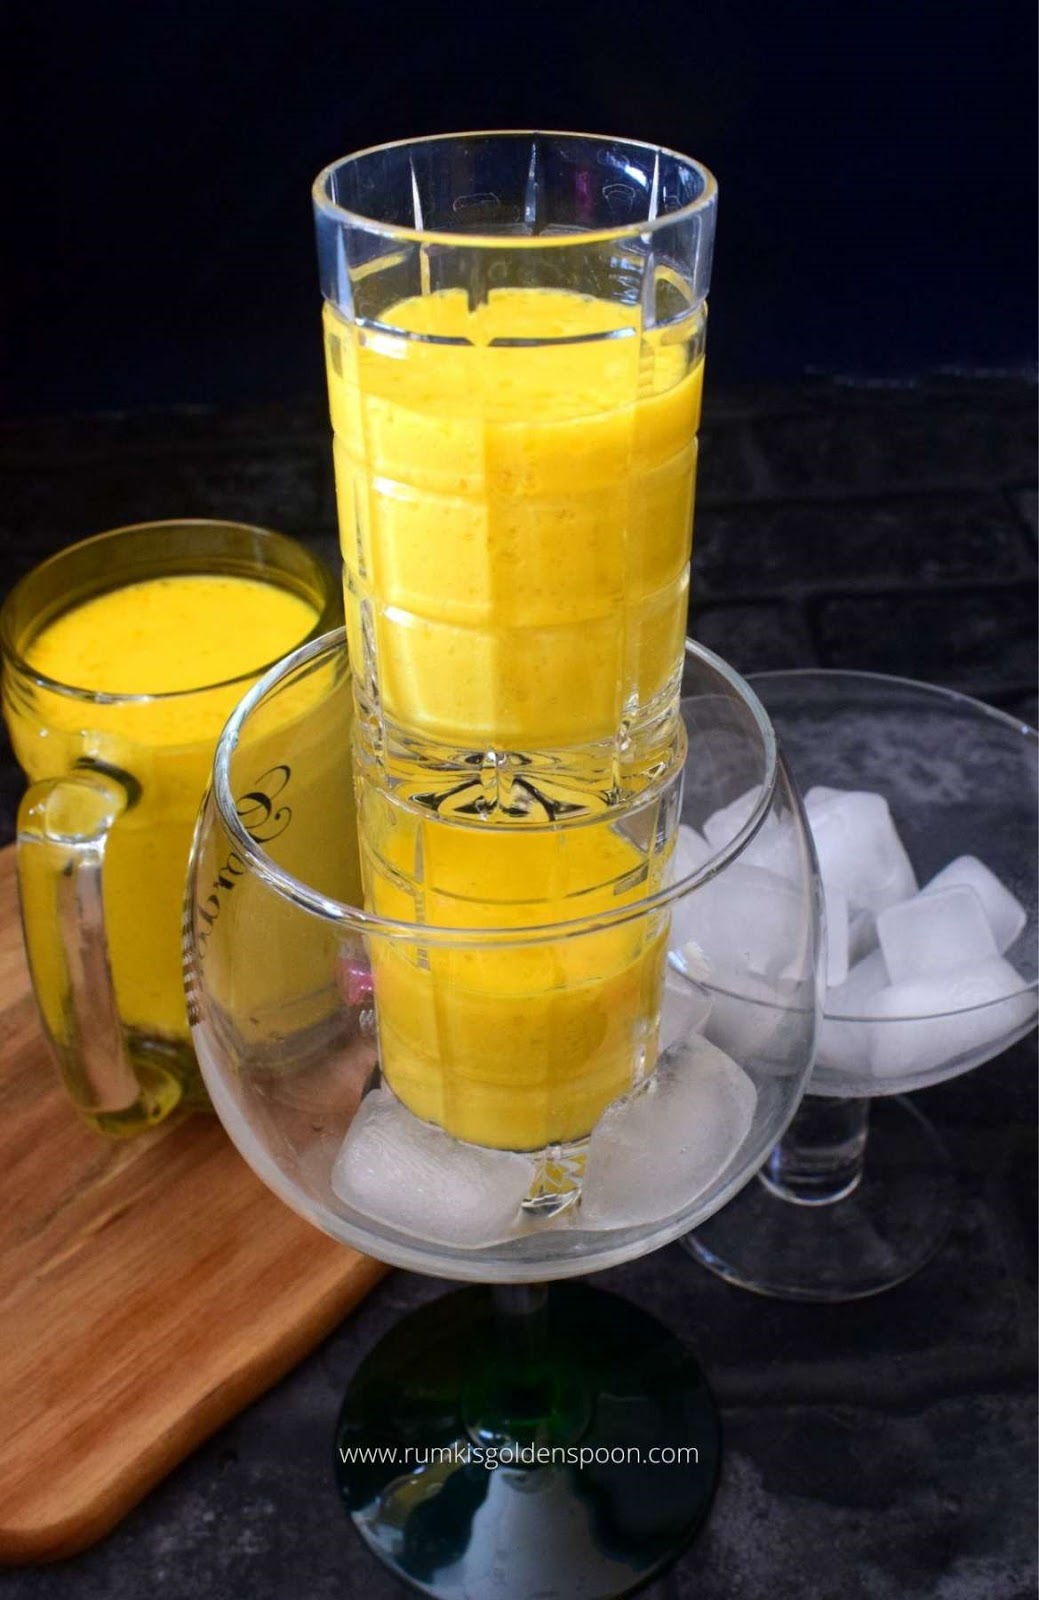 mango shake, mango milk shake, mango milkshake, recipe for mango shake, mango shake recipe, mango smoothie, how to make mango shake, how to make a mango shake, mango smoothie recipe, mango shake benefits, mango milkshake recipe, recipe for mango milkshake, how to make mango milk shake, how to make mango milk shake, mango shake kaise banaye, how make mango smoothie, mango shake kaise banaen, mango shake kaise banate hain, mango shake ingredients, how to prepare mango shake, how to make mango shake at home, mango drink, mango drink recipes, summer drinks, summer drinks recipes, summer drinks in India, beverage recipe, smoothie recipes, milkshake recipe, Rumki's Golden Spoon